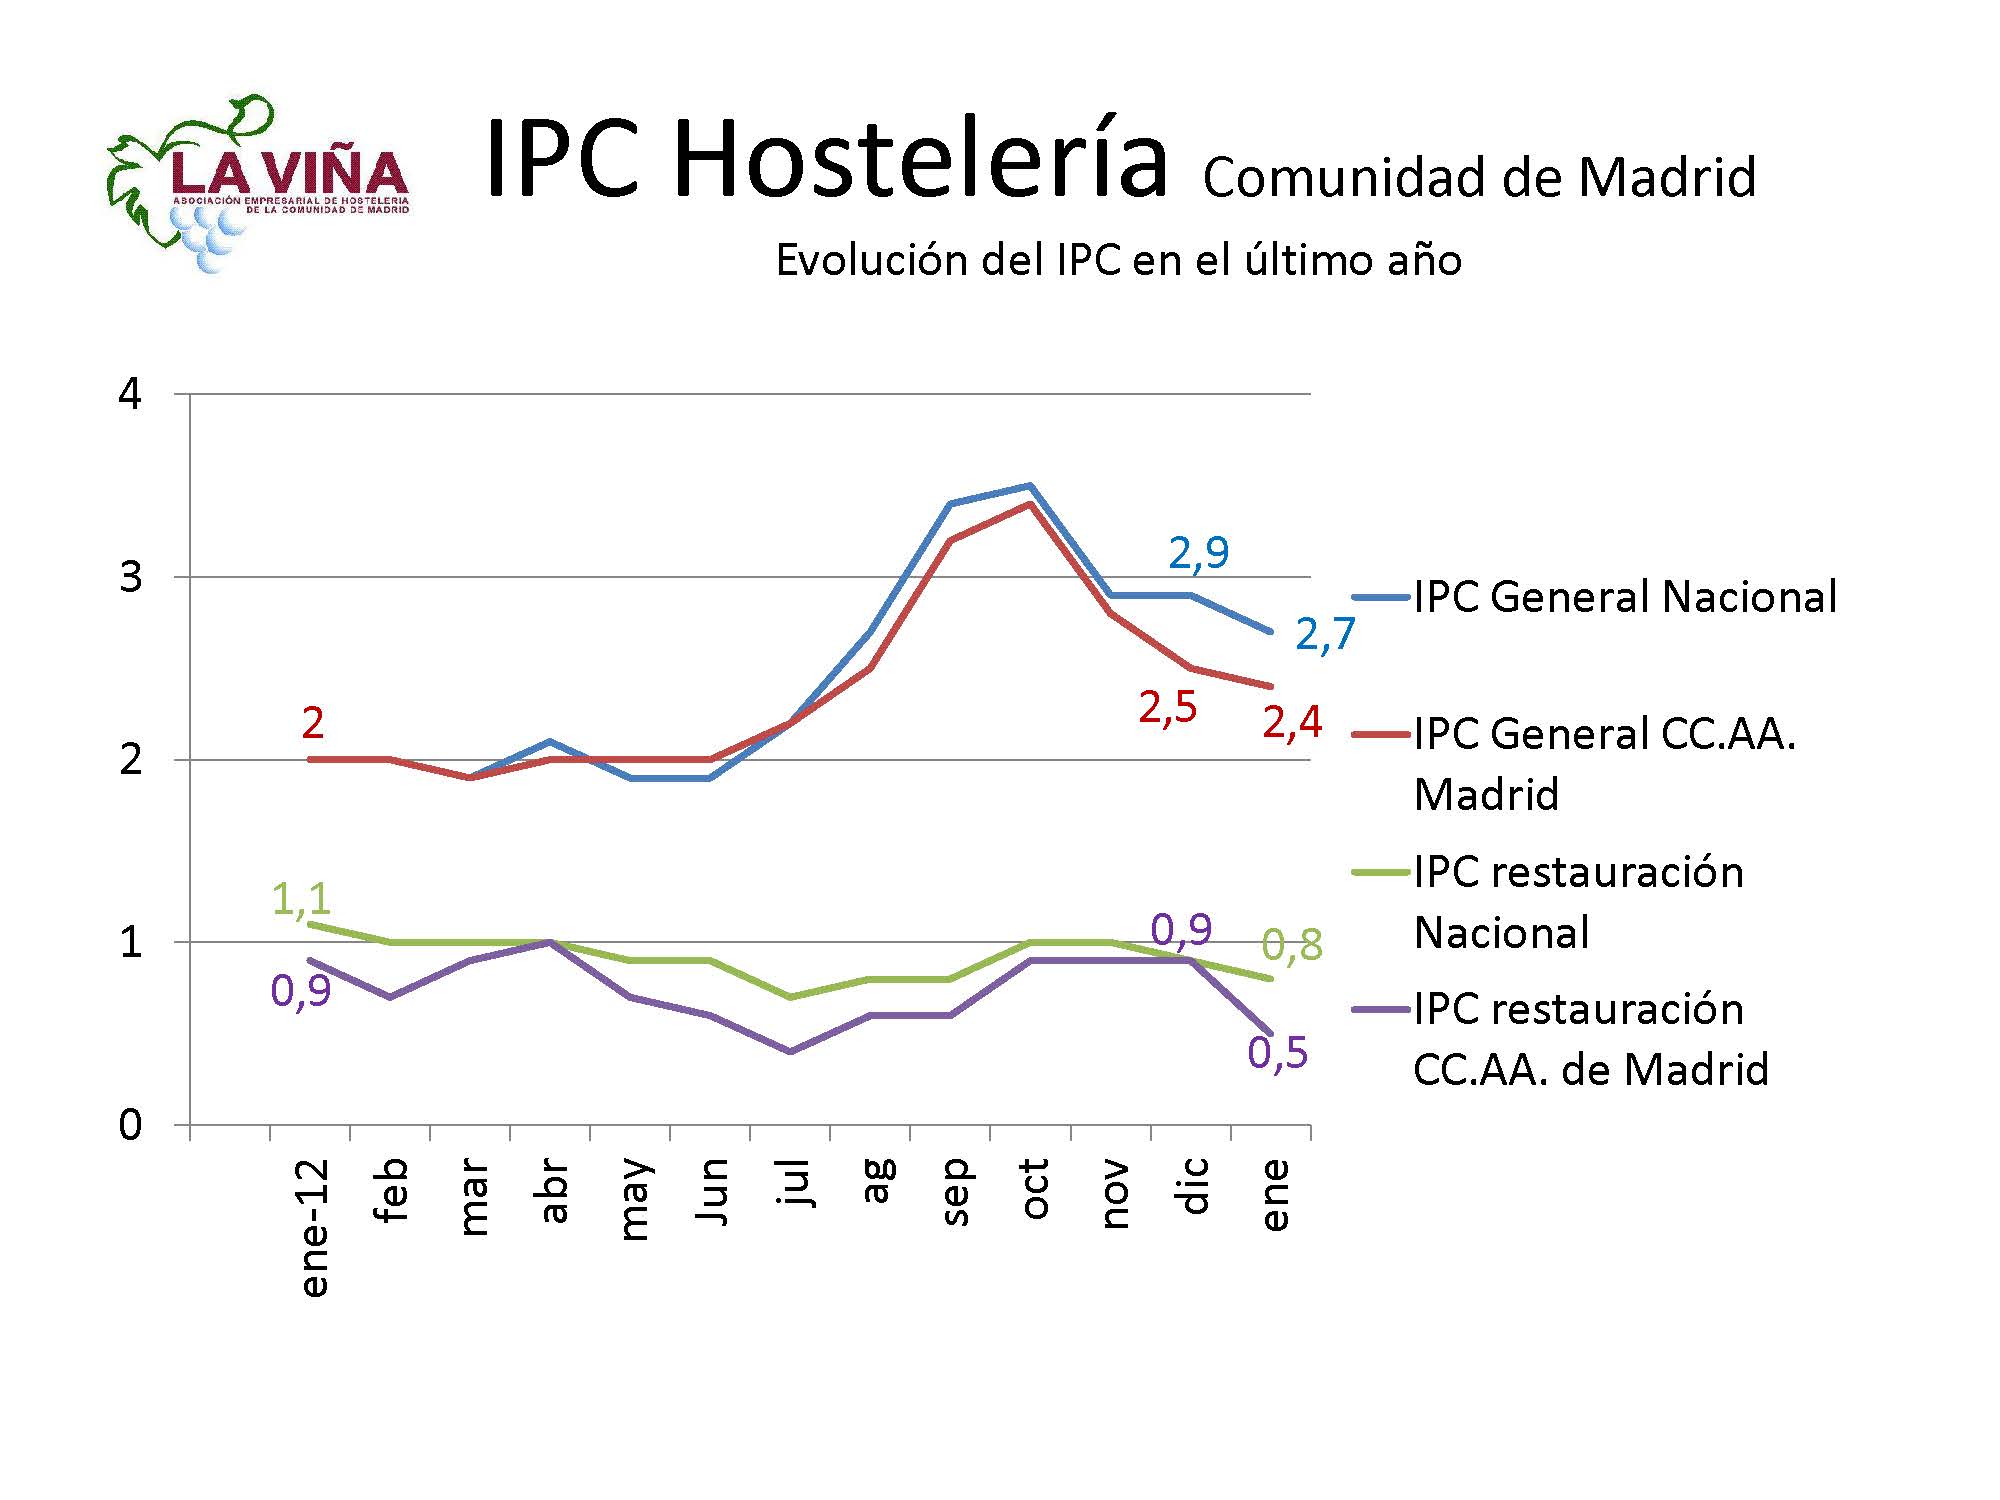 Los precios de bares y rtes. madrileños suben en enero un 0,5% frente al 2,4% del IPC regional - La Viña